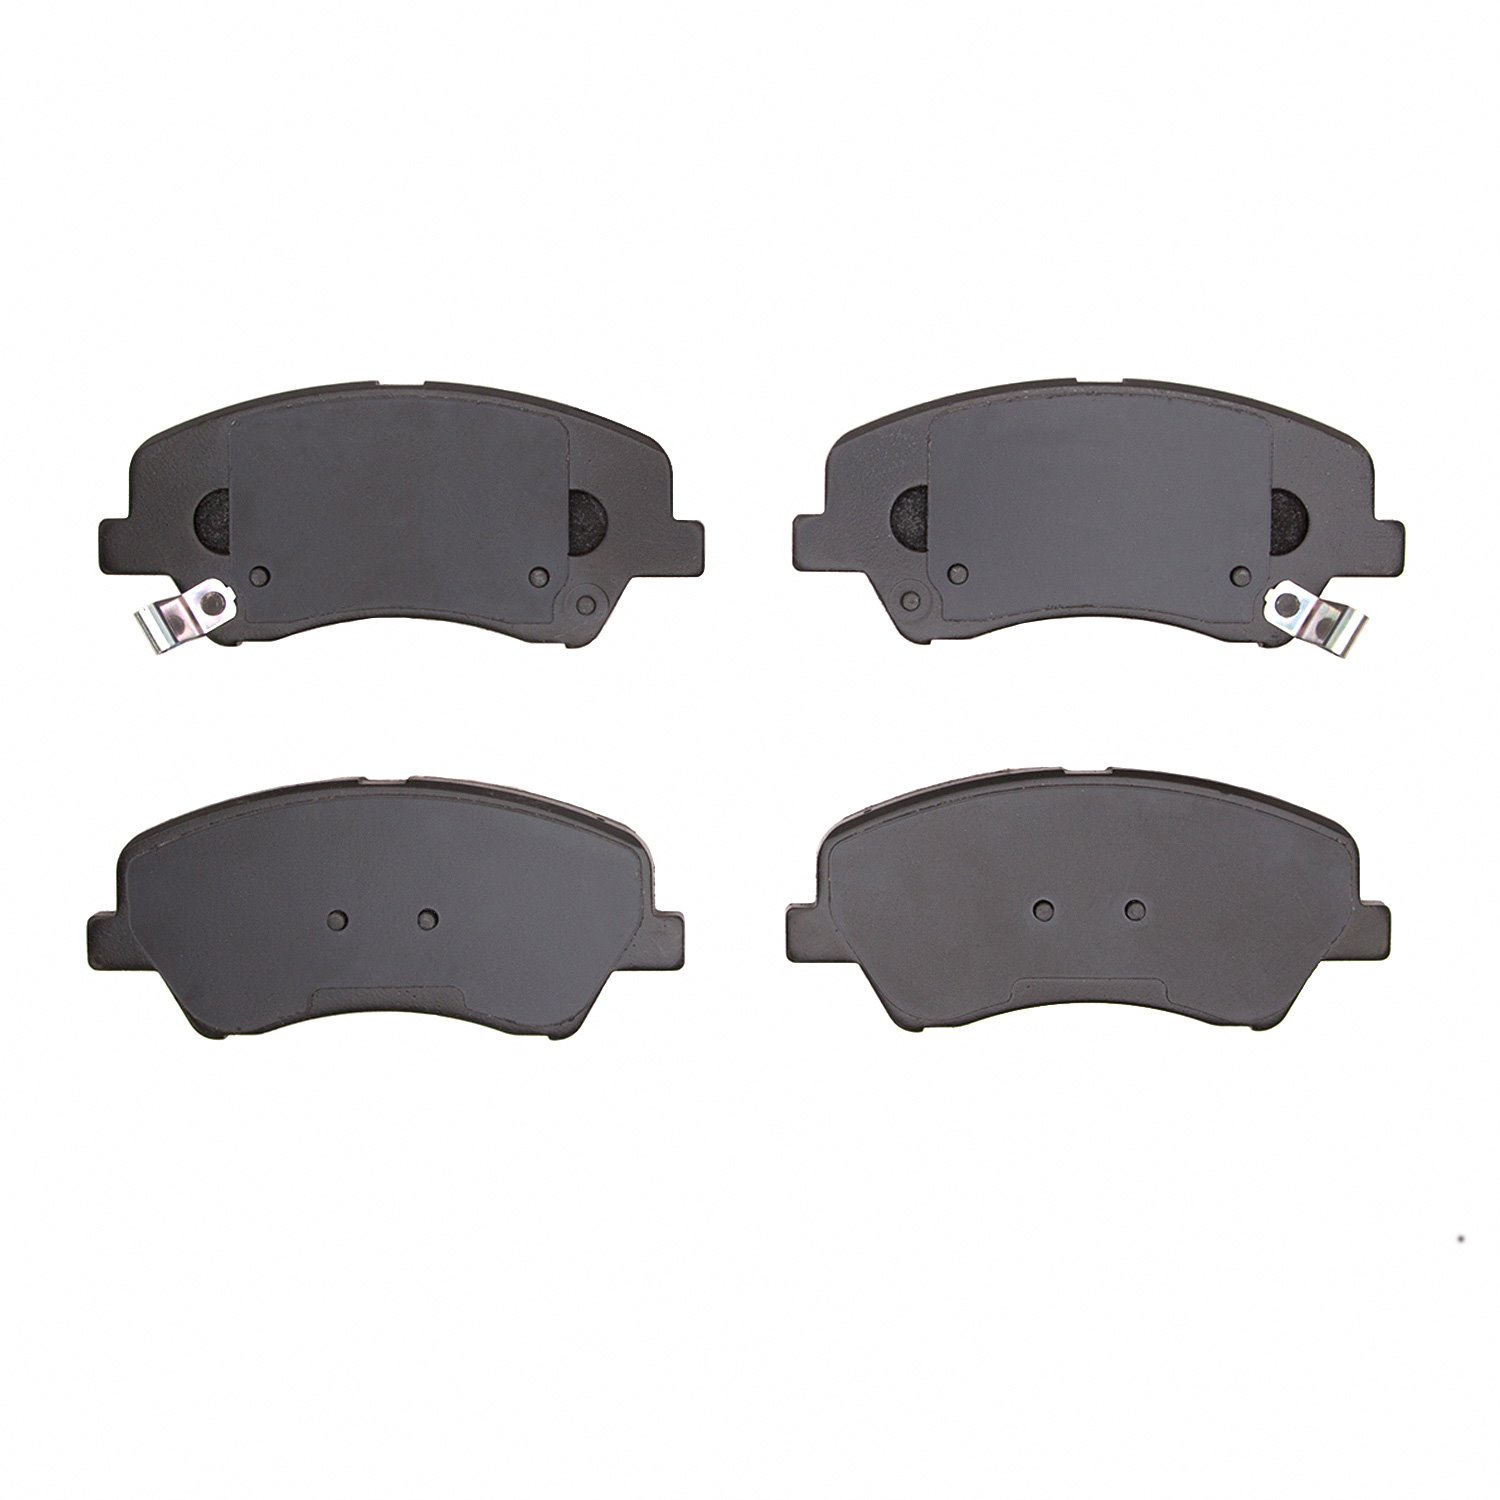 1310-2190-00 3000-Series Ceramic Brake Pads, Fits Select Kia/Hyundai/Genesis, Position: Front